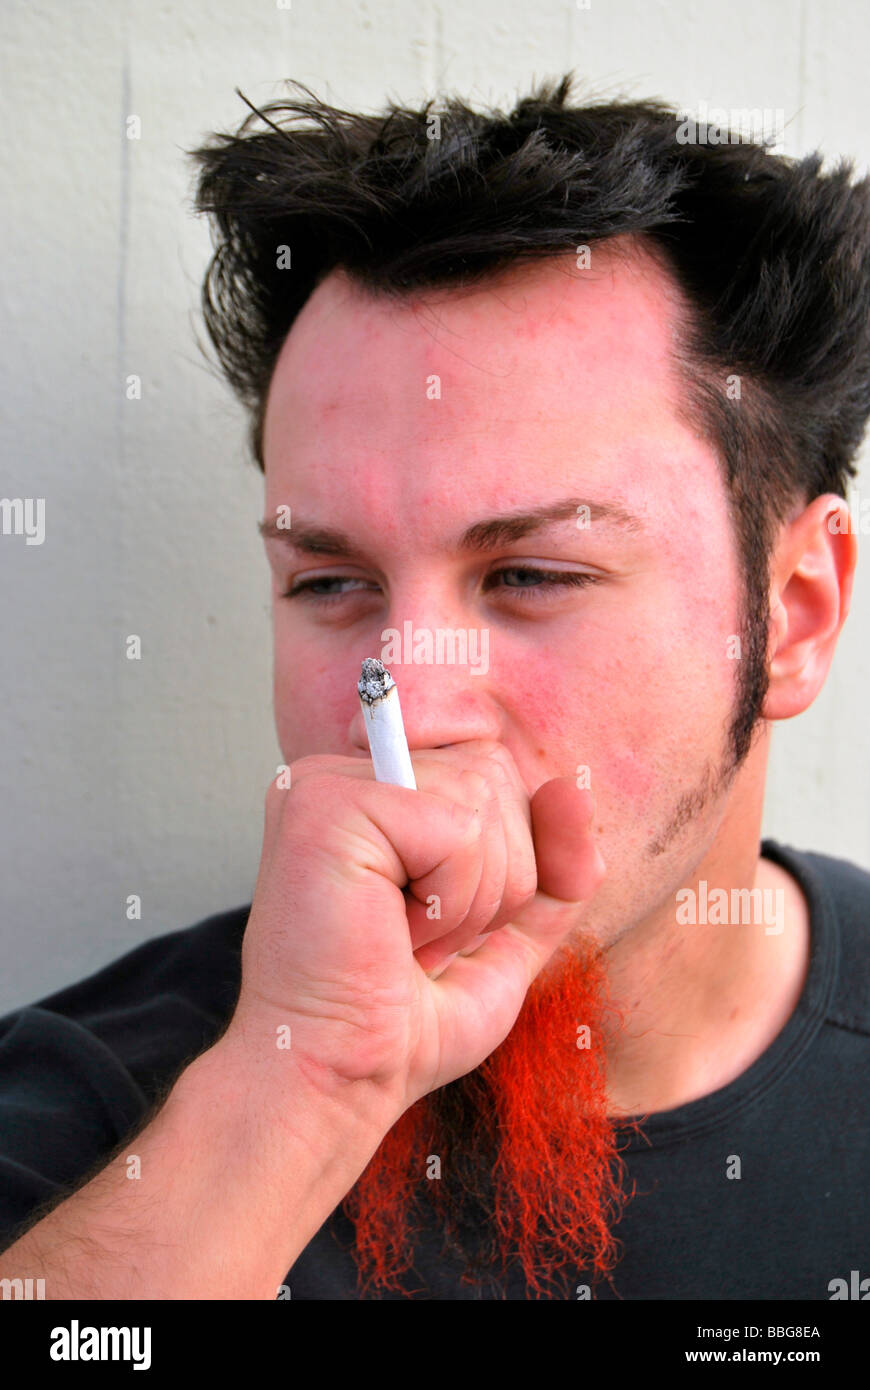 Fumeurs mauvaise herbe, jeune homme avec barbe rouge-noir fumer un joint, cigarette roulée à la main Banque D'Images